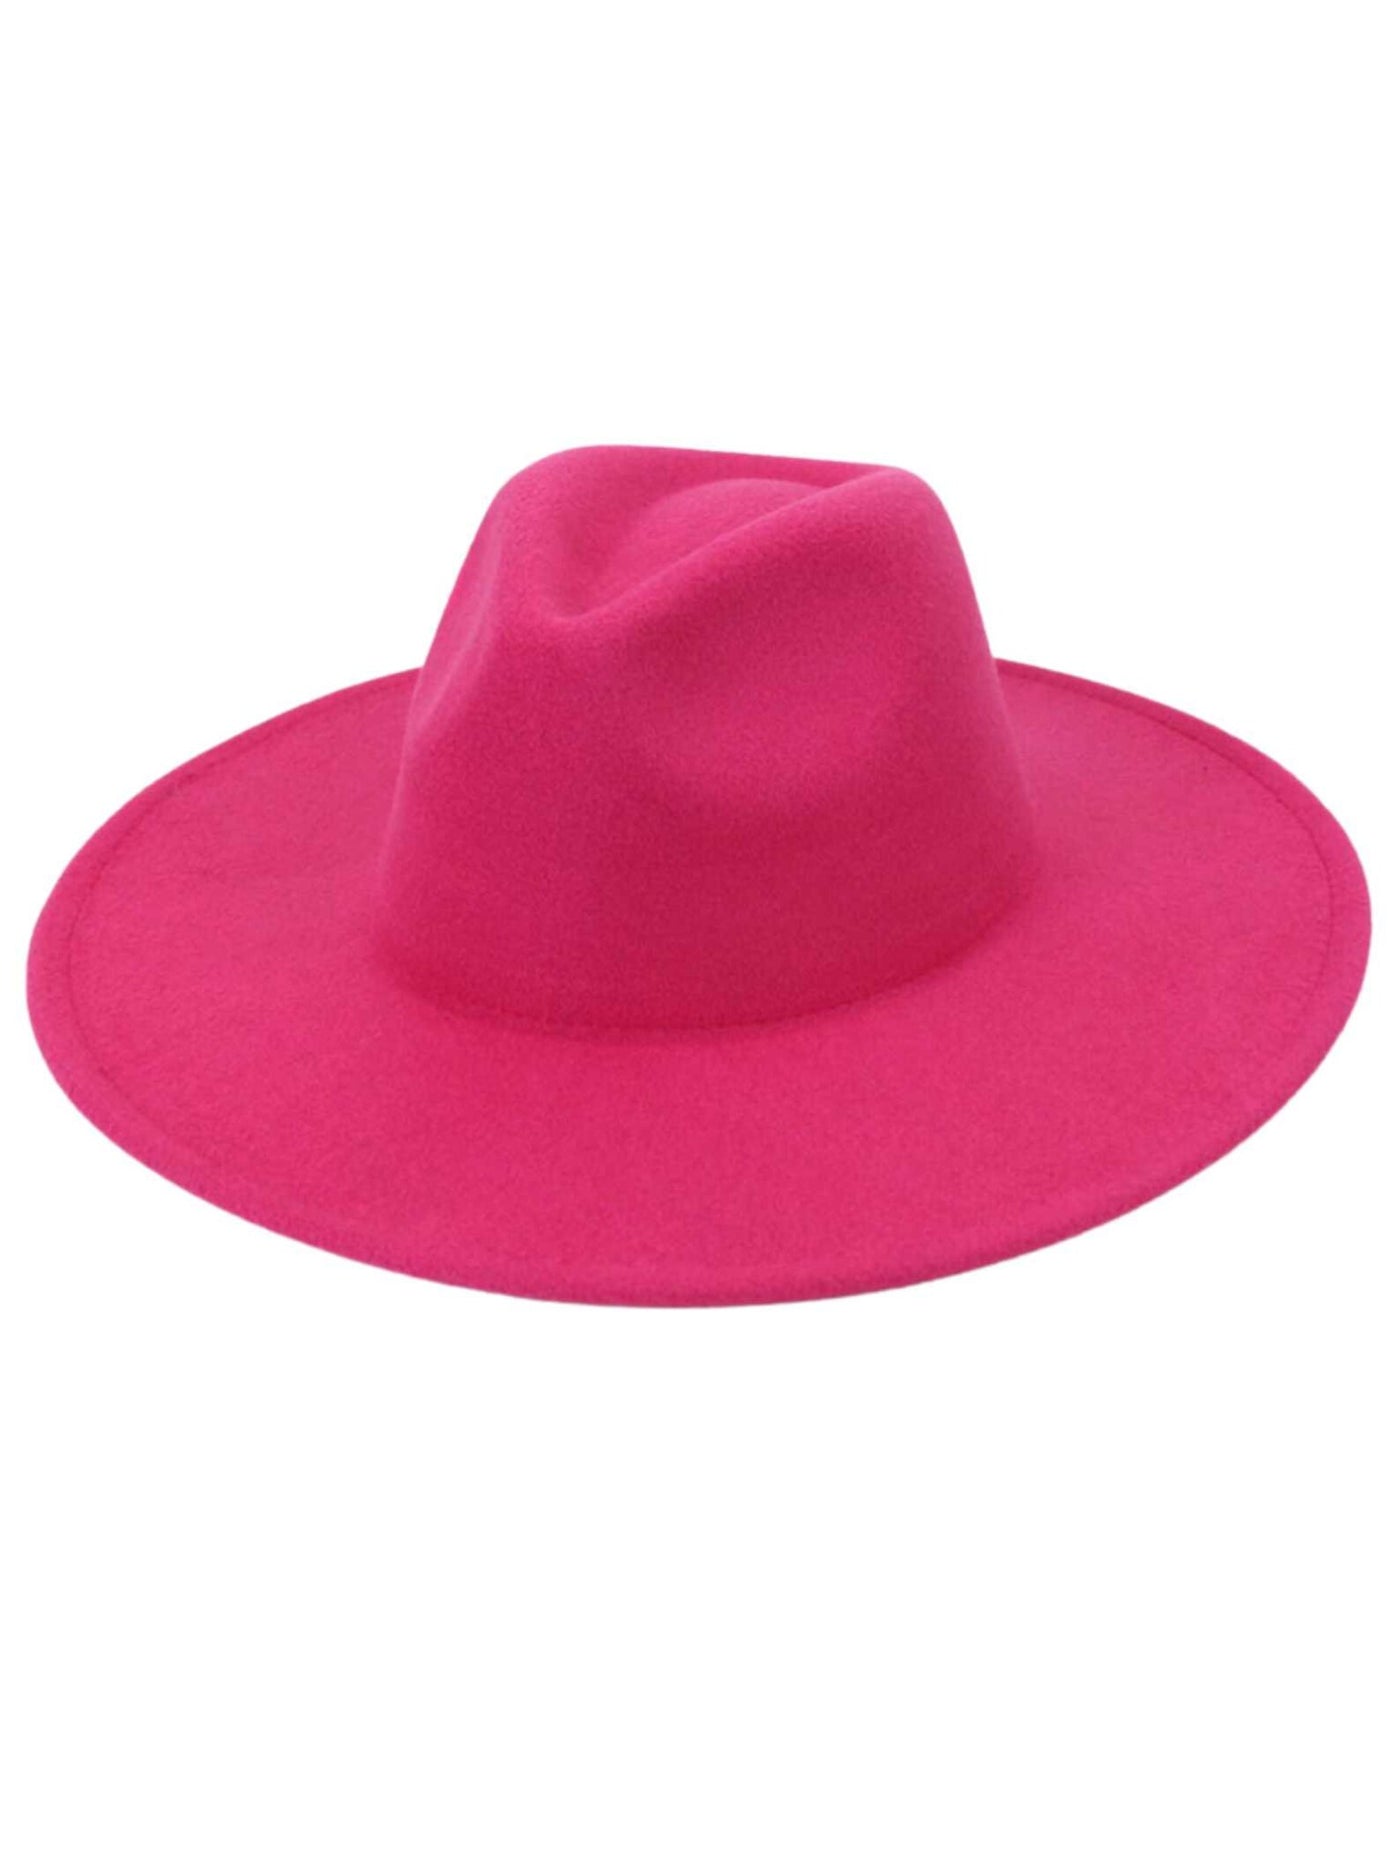 Hot Pink Brim Hat